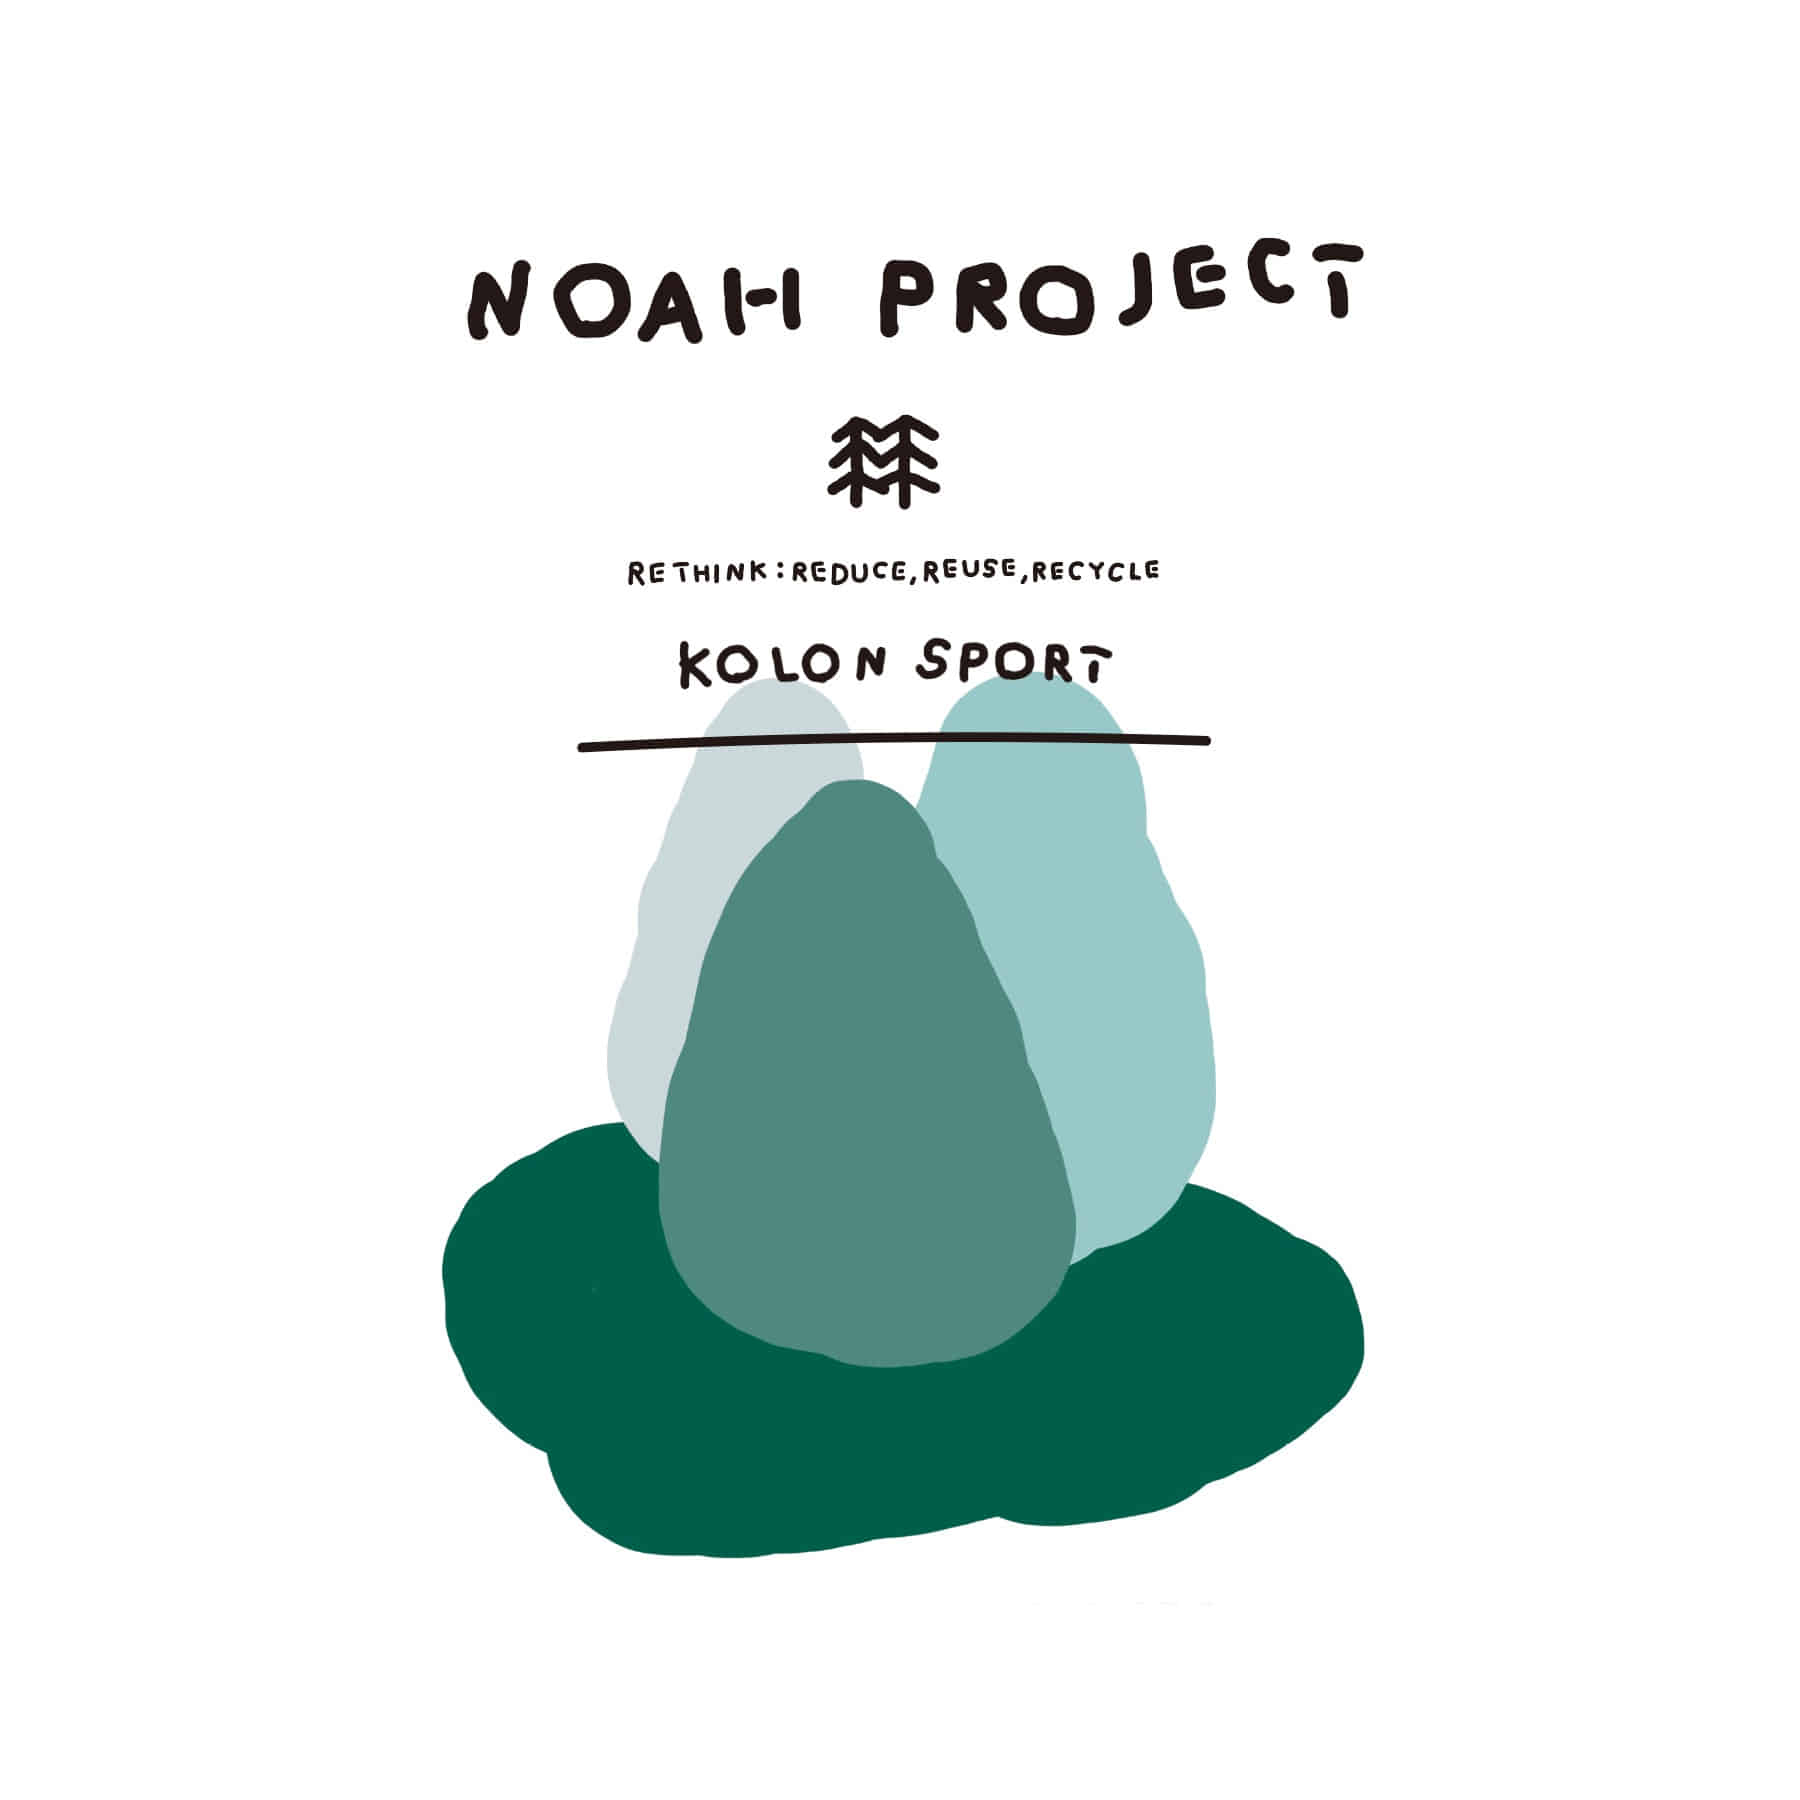 NOAH PROJECT by KOLON SPORT